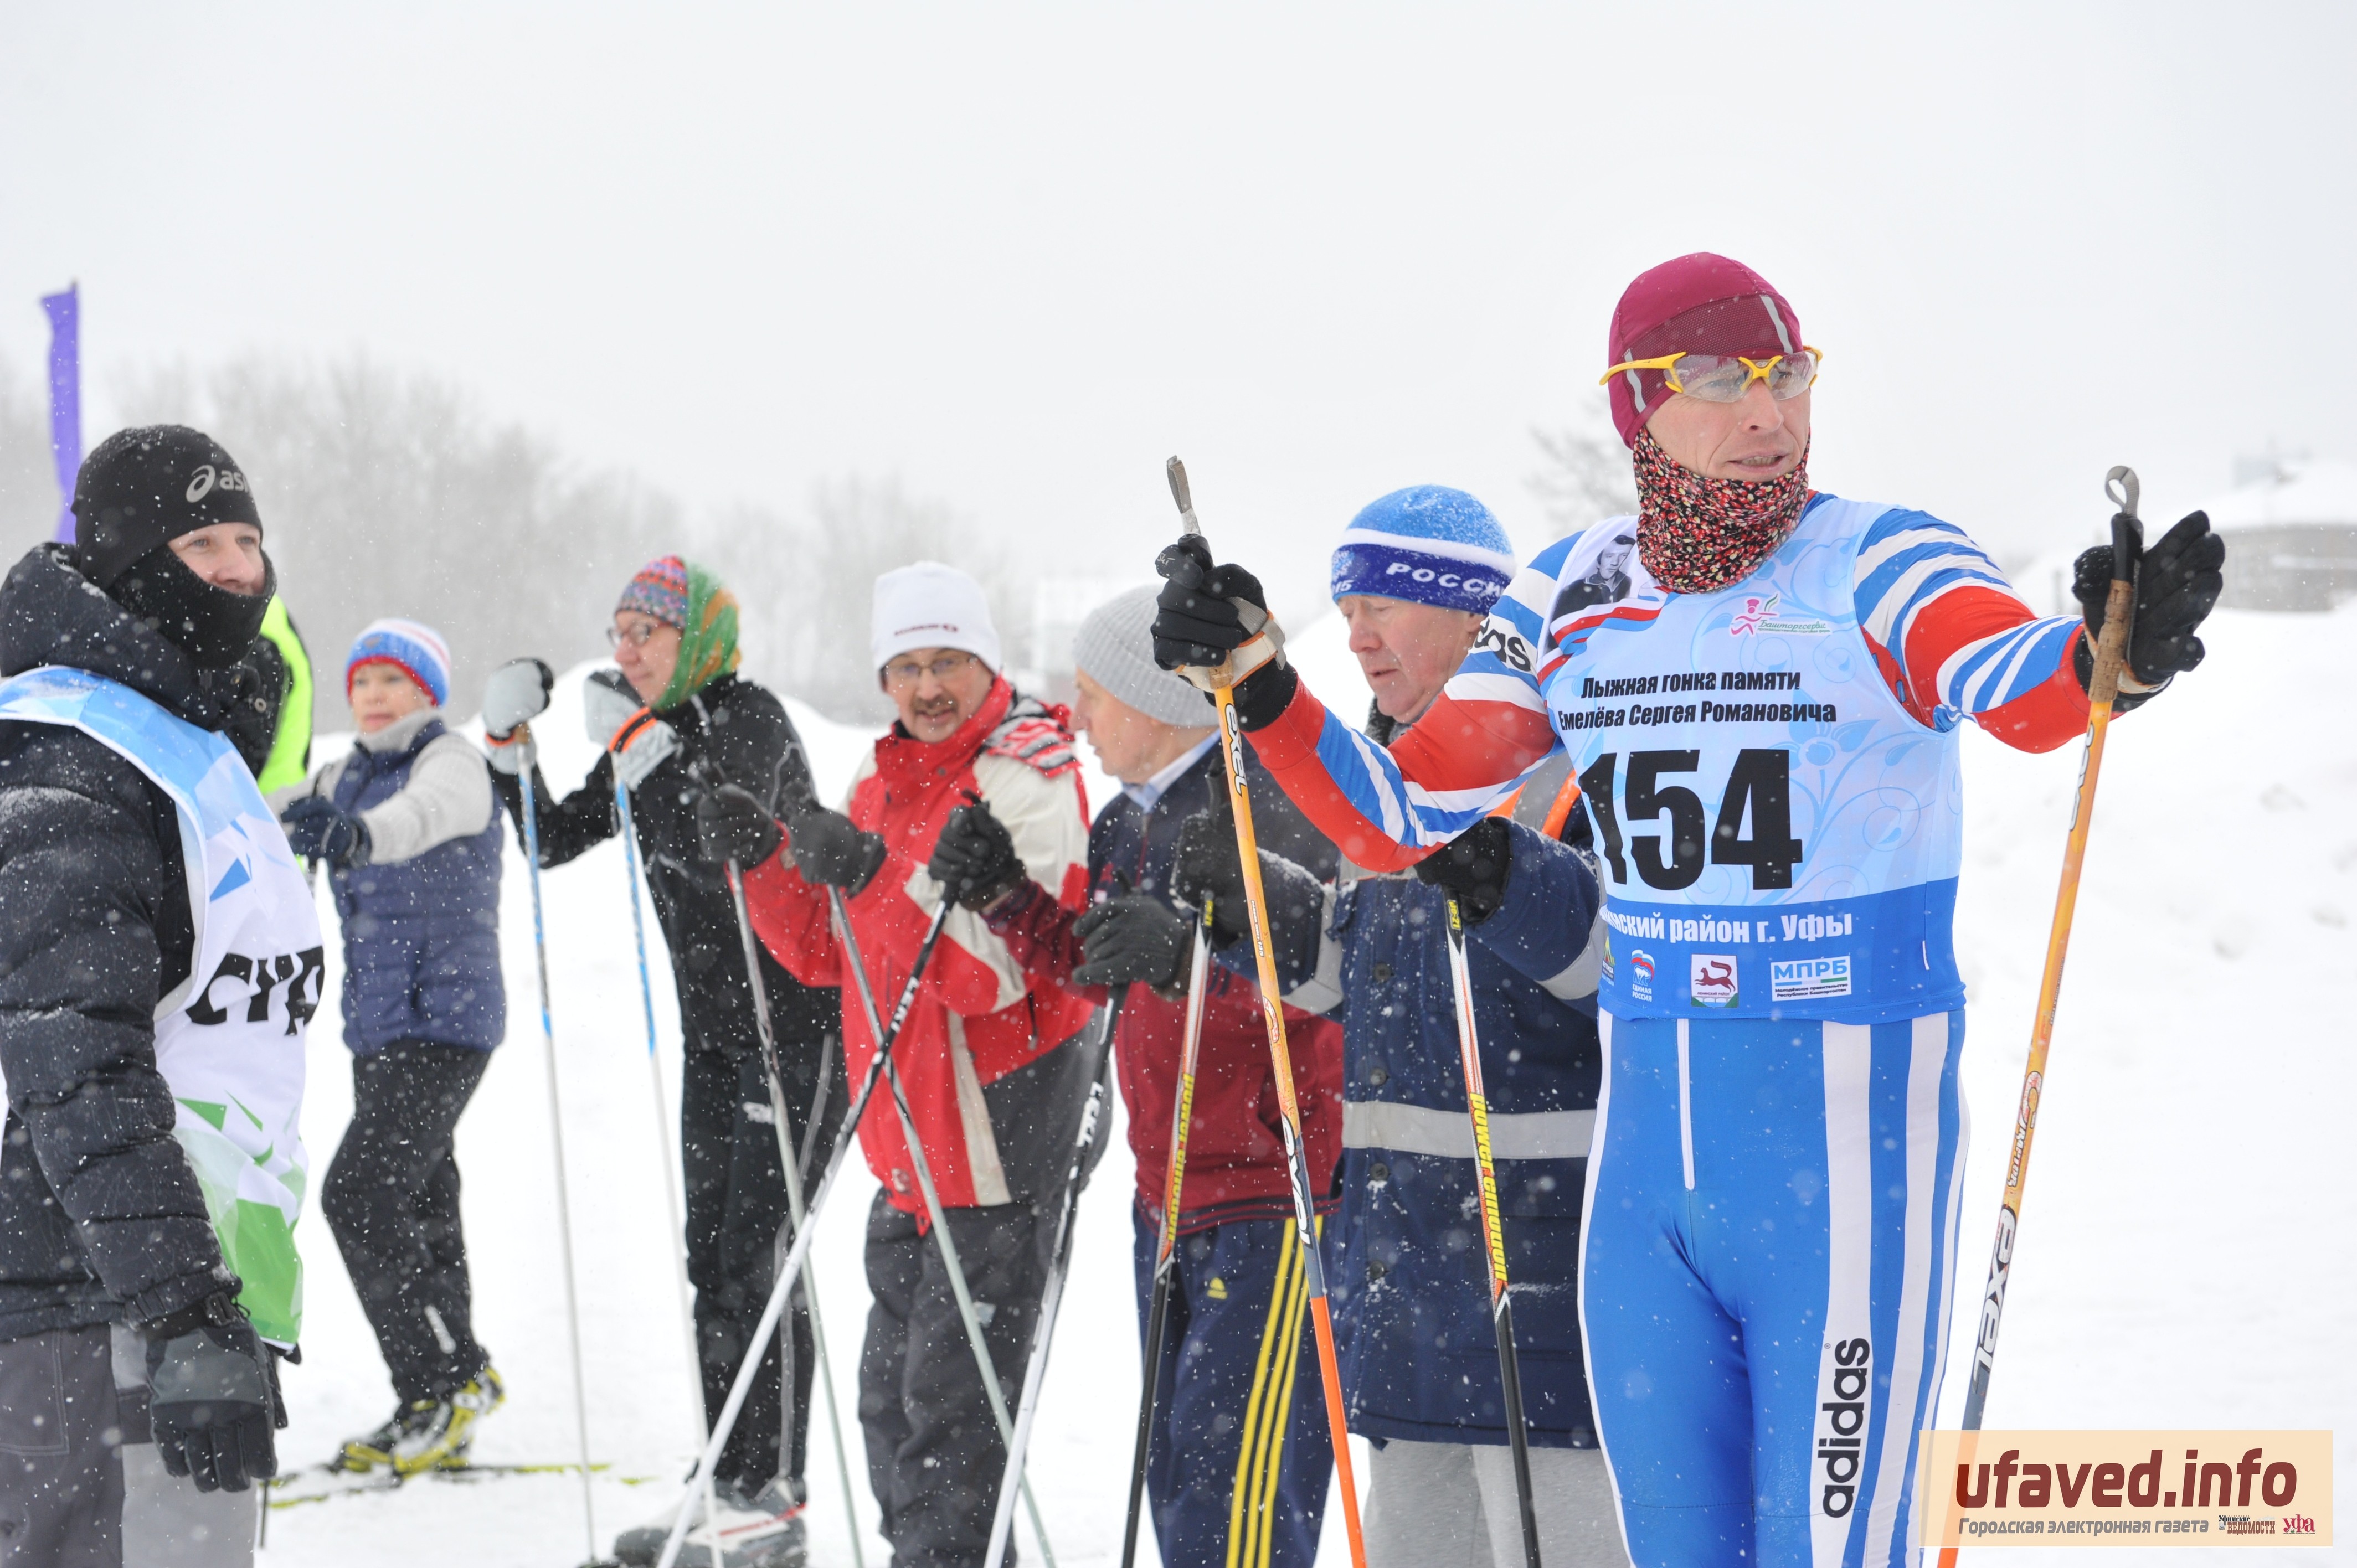 Уфимскую лыжню пробежали более 500 человек